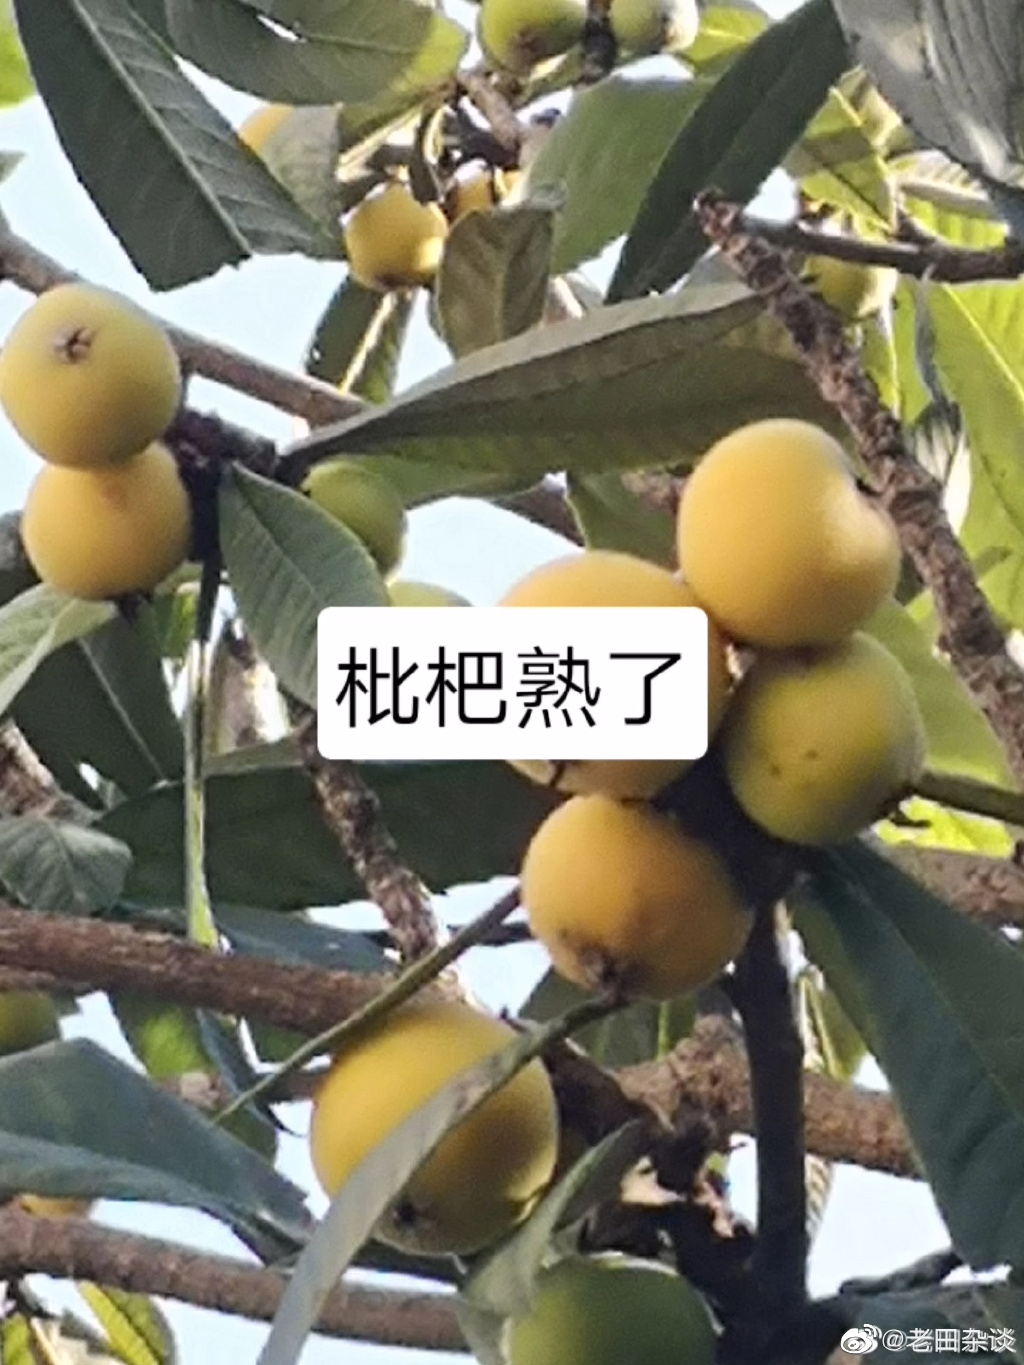 上海網友在微博貼文｢封了49天了，小區裡的枇杷已經變黃了」，所搭配的照片。 翻攝老田雜談微博 